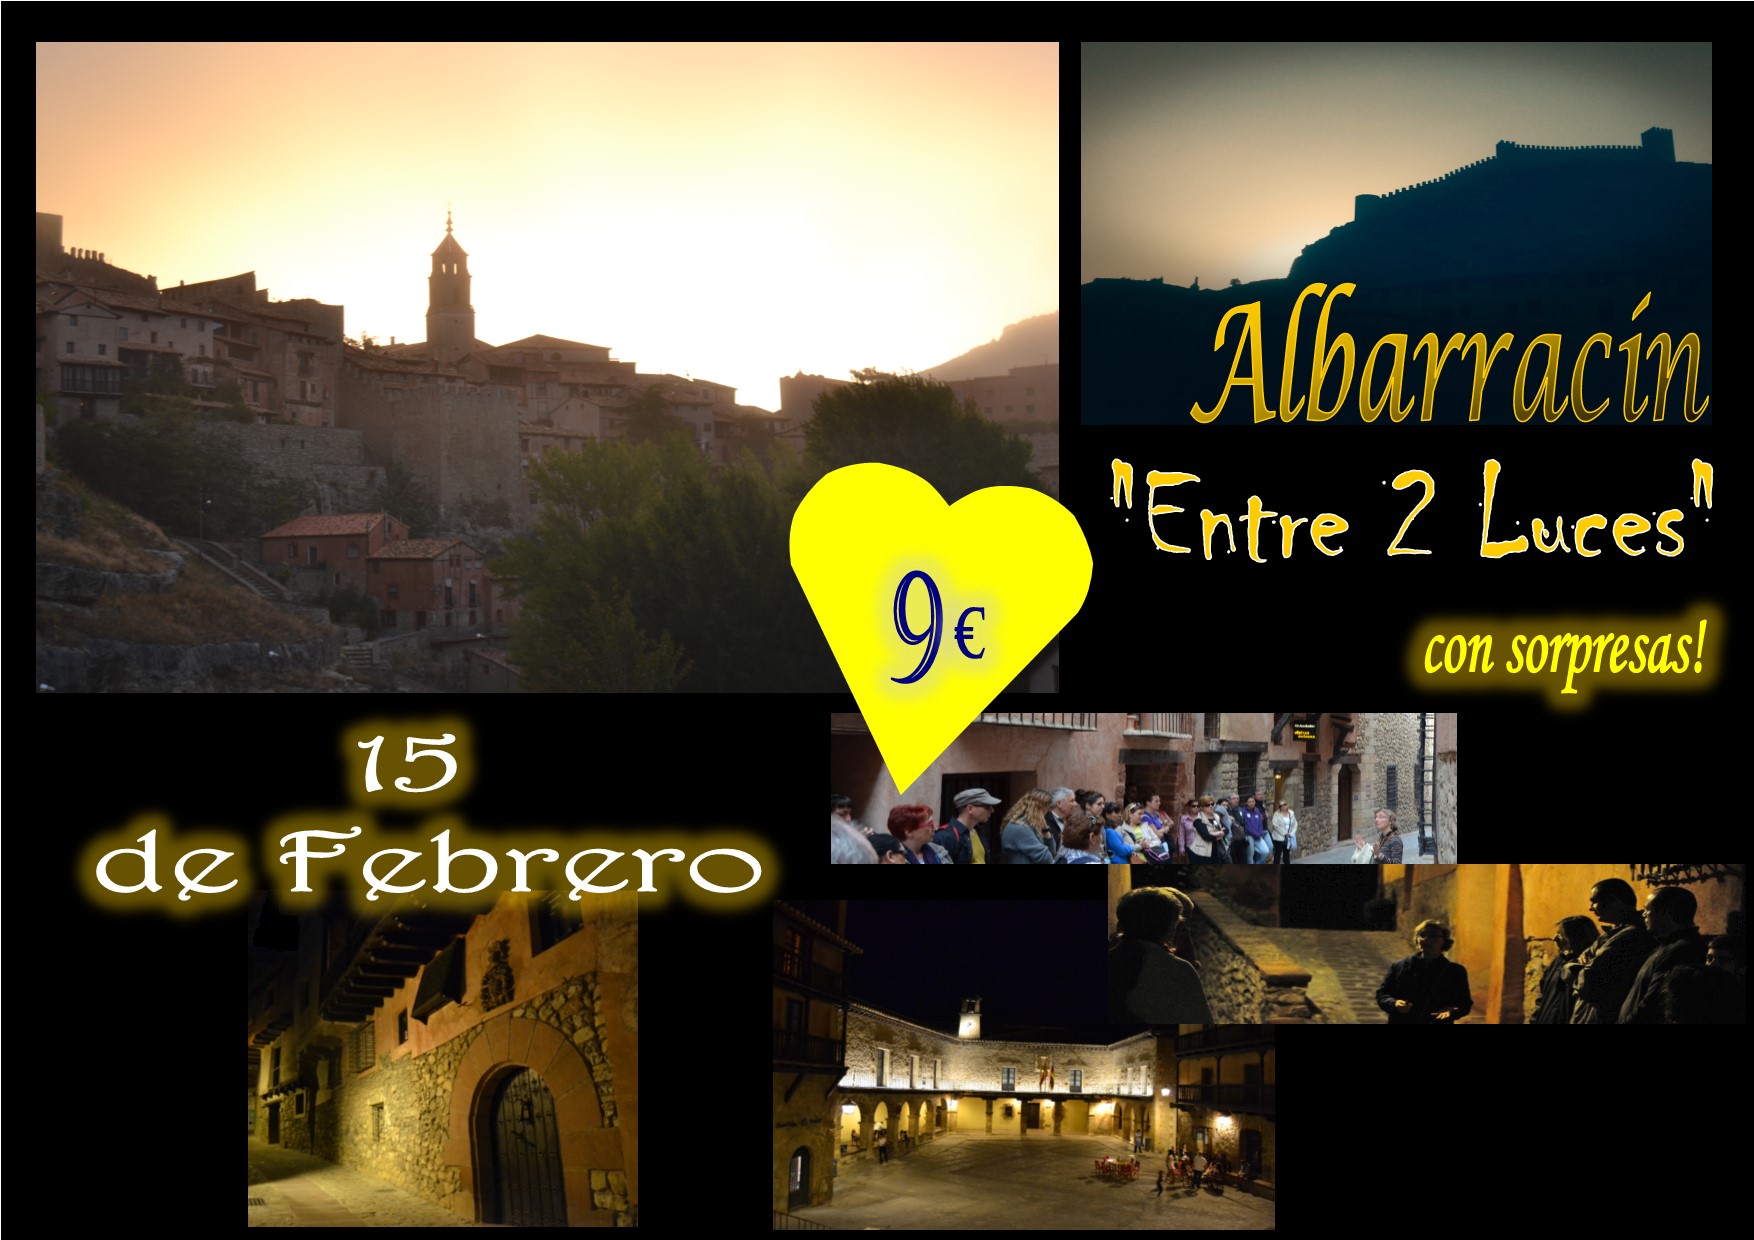 Este Sábado 15 de Febrero…Albarracín Entre 2 Luces y sorpresas!